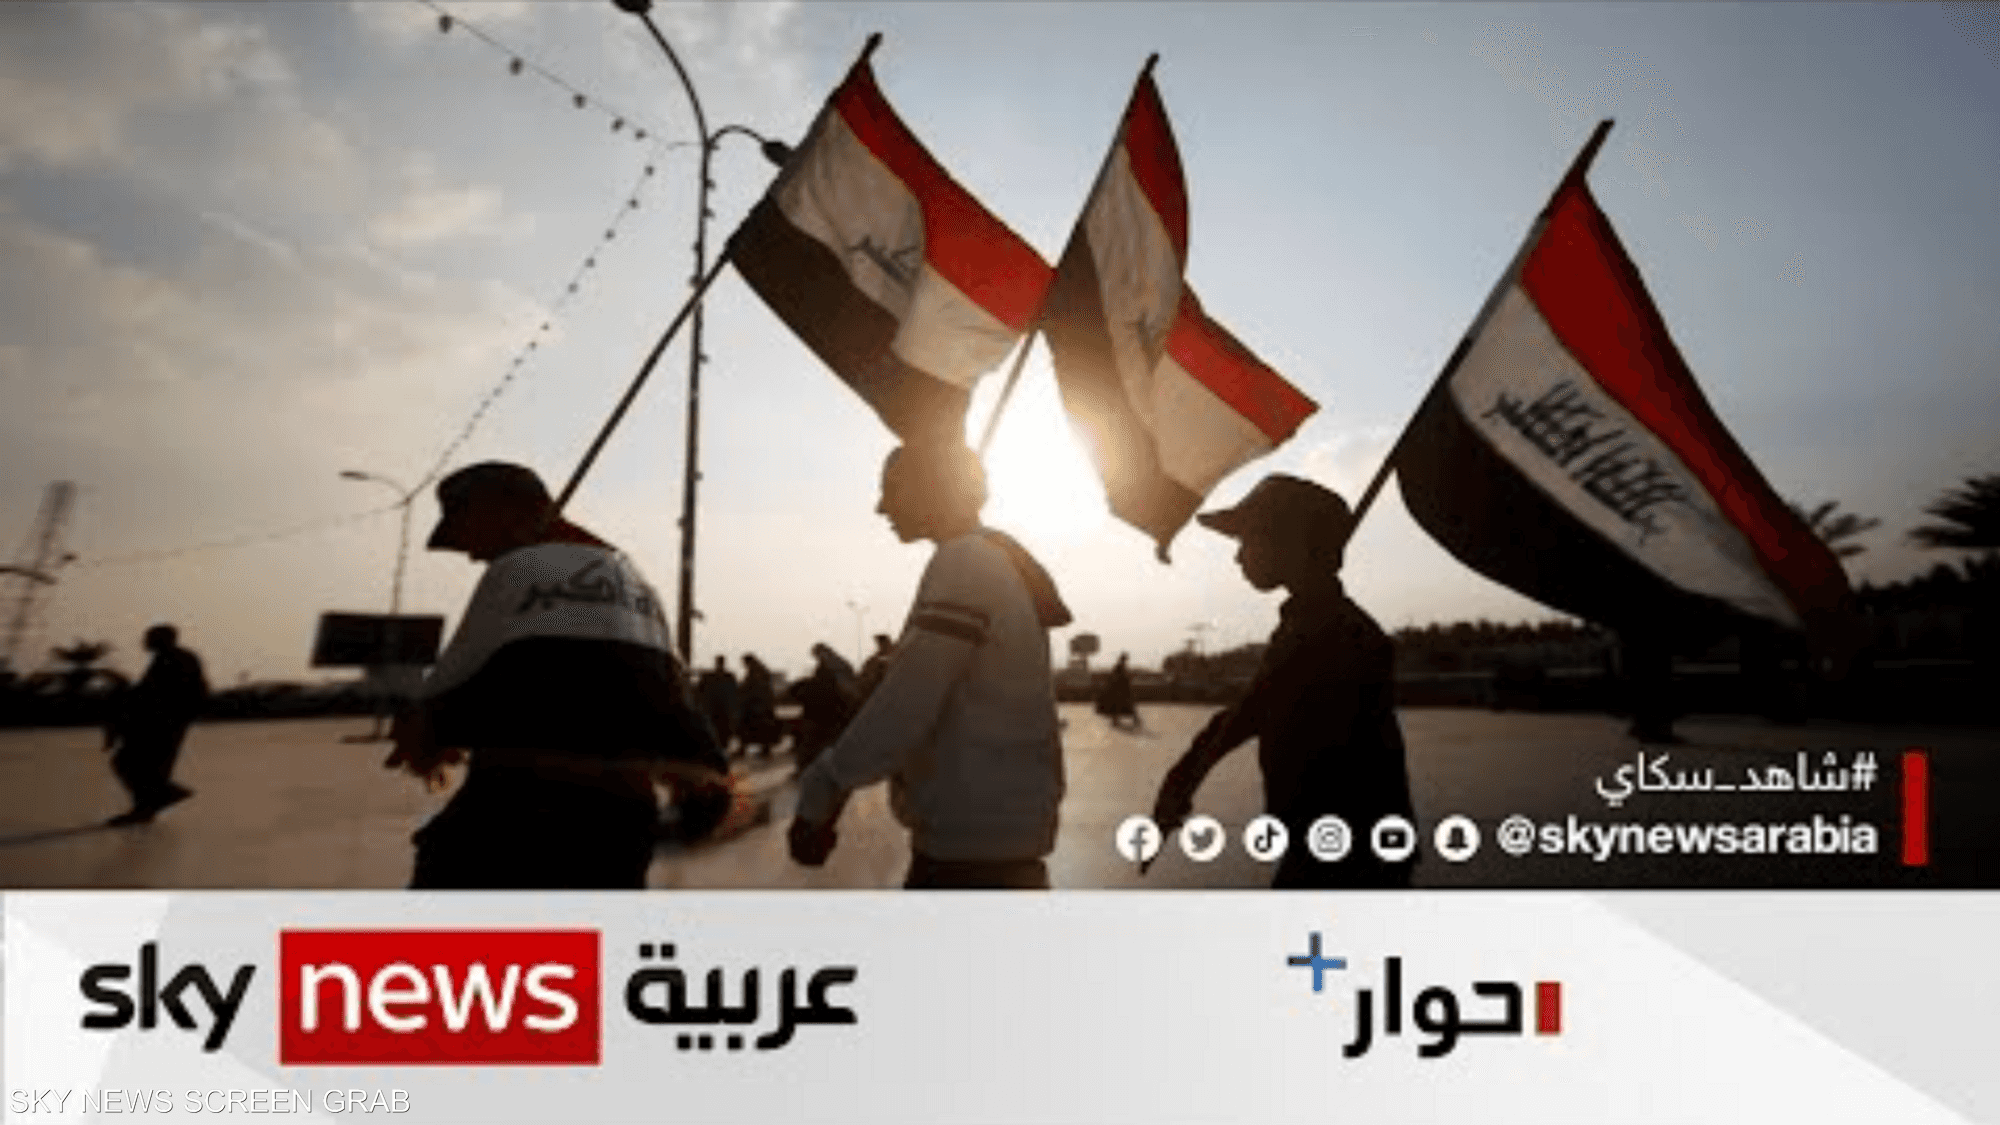 الفساد ينهش خيرات العراق.. فهل يمكن ايقافه؟